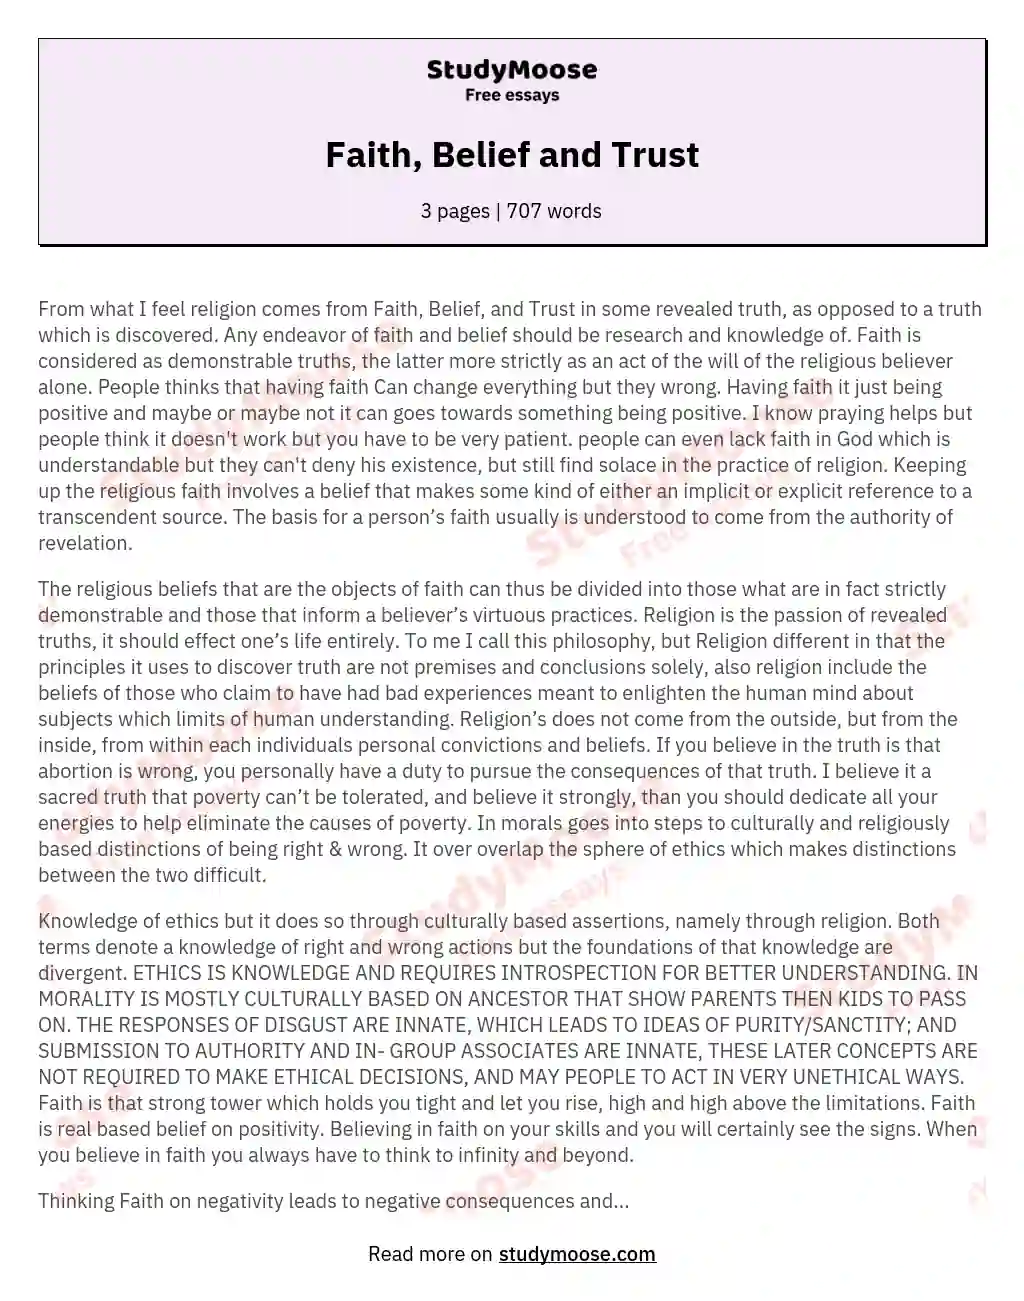 Faith, Belief and Trust essay